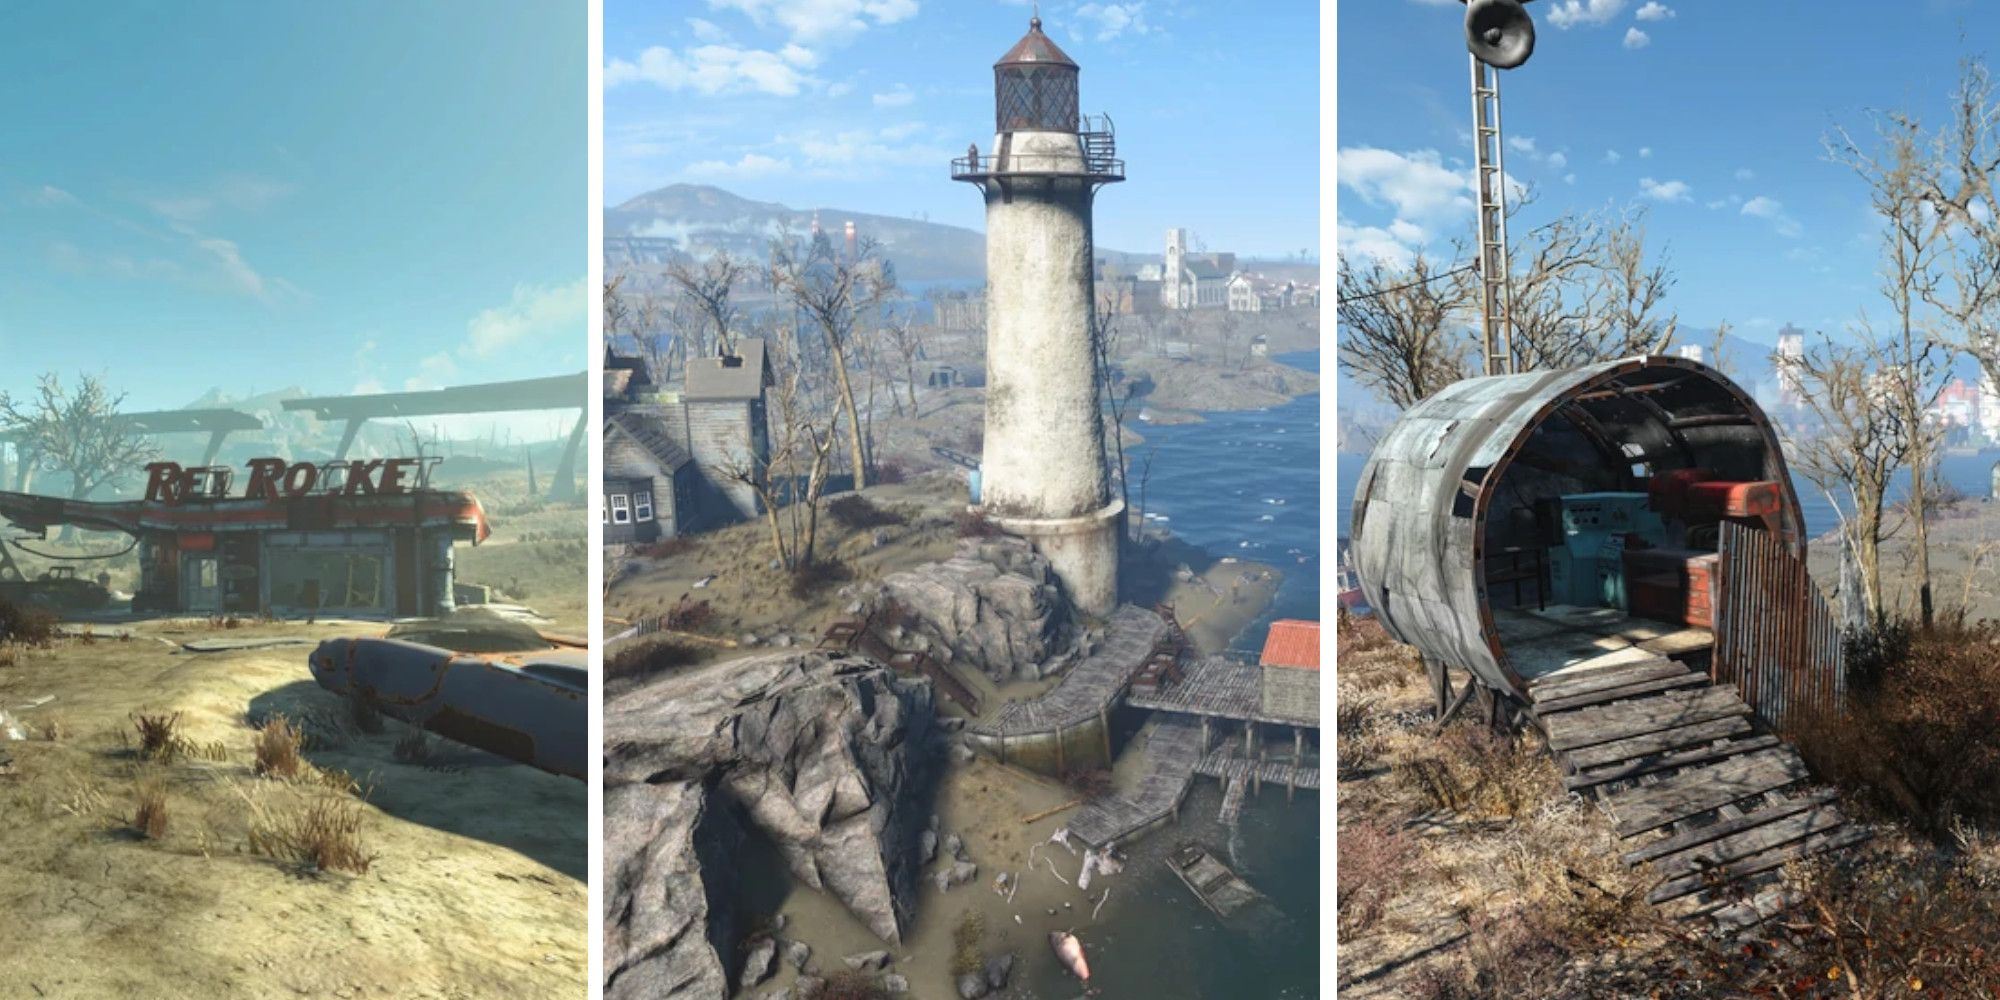 I migliori insediamenti per le build endgame in Fallout 4